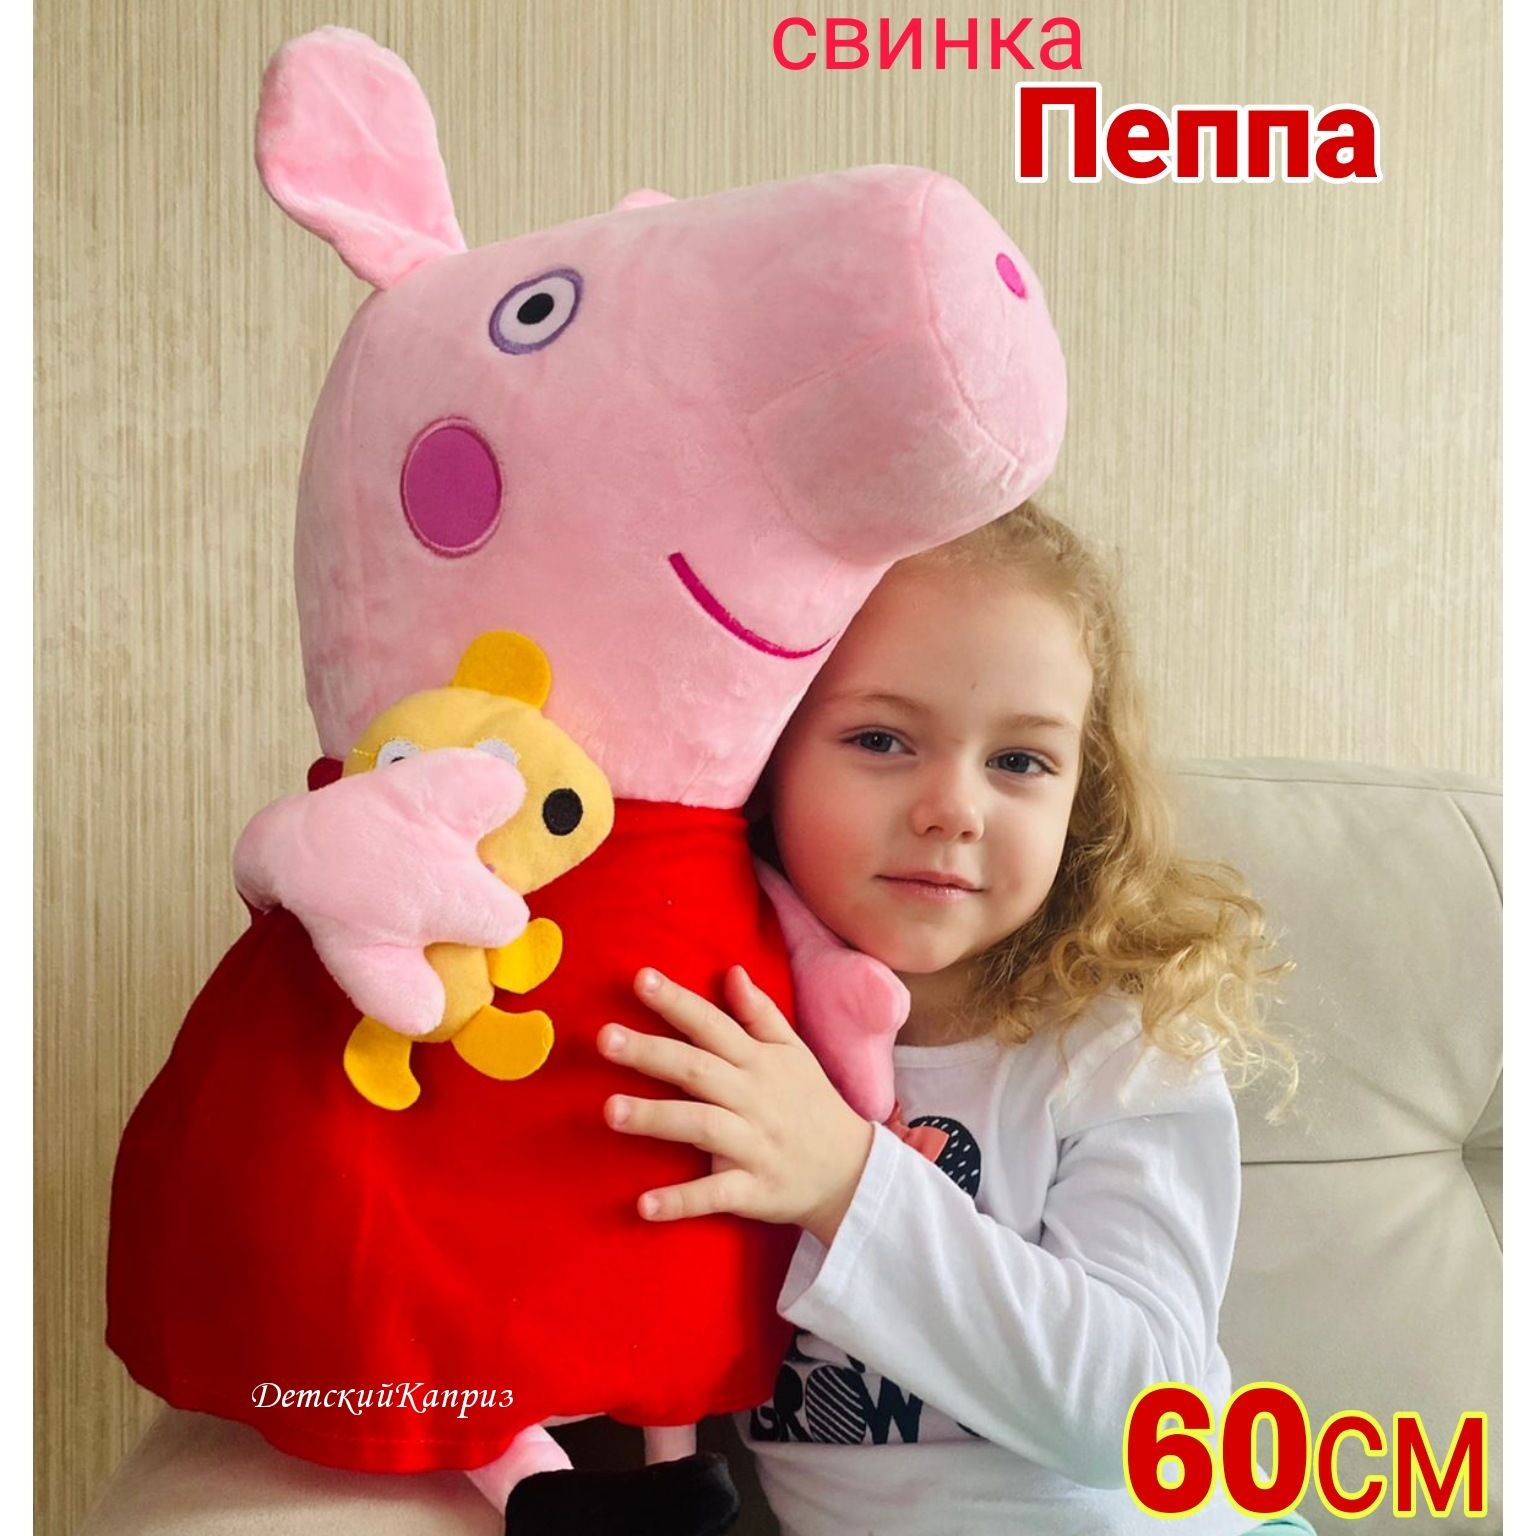 Мягкие игрушки ᐈ Купить мягкую игрушку в Киеве - Цены, фото на Panama